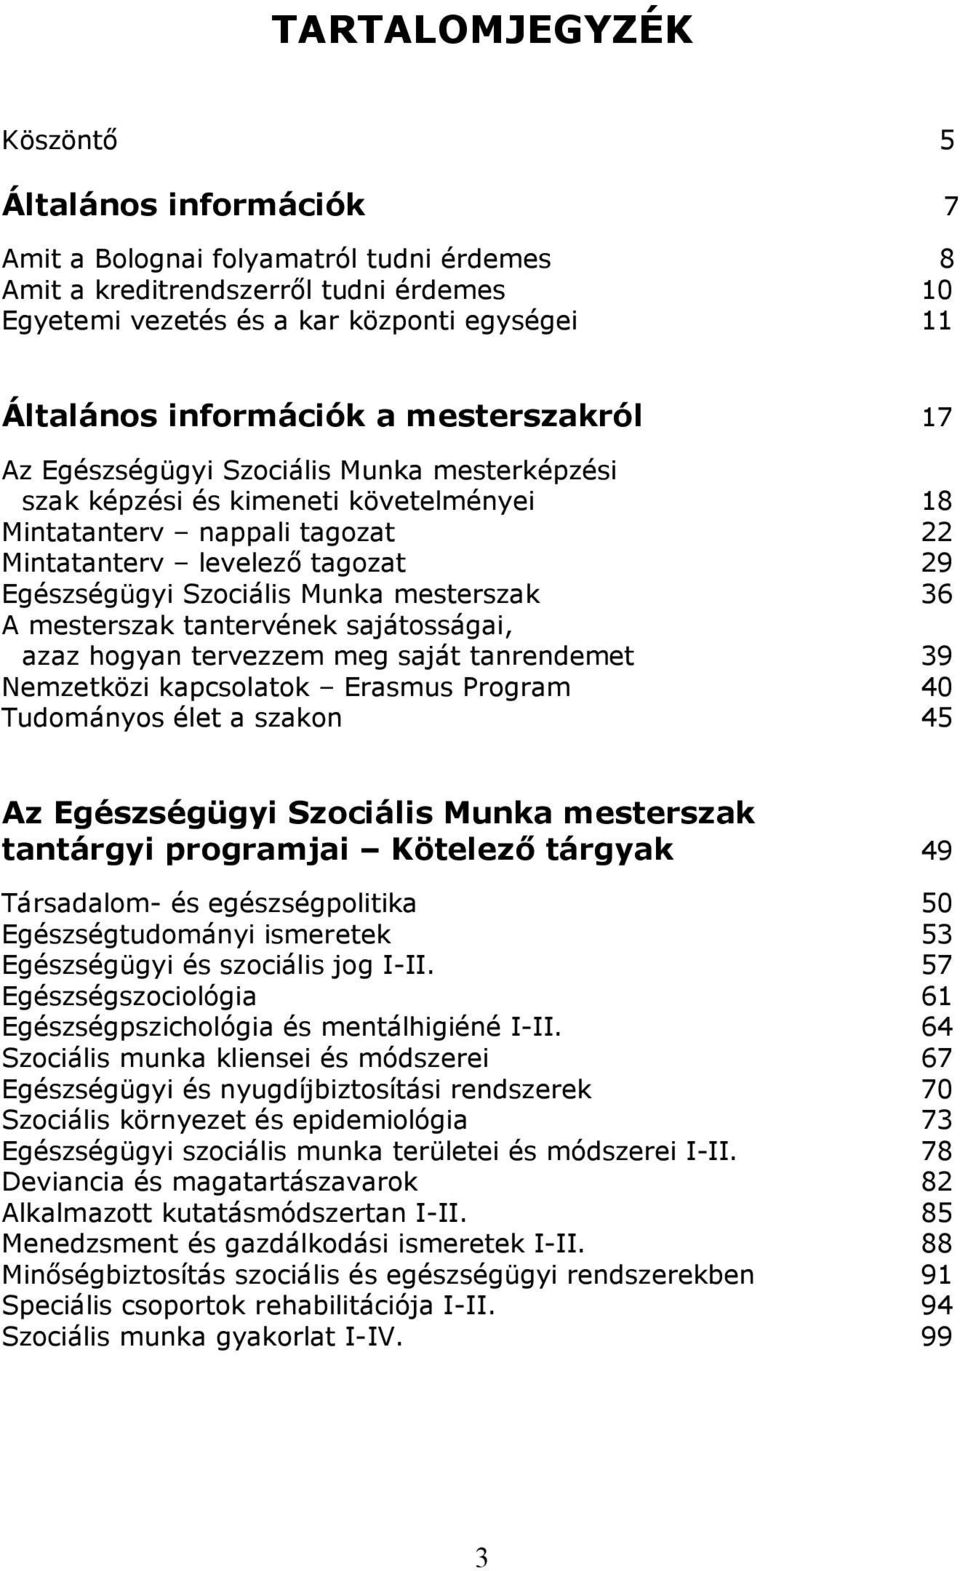 Szociális Munka mesterszak 36 A mesterszak tantervének sajátosságai, azaz hogyan tervezzem meg saját tanrendemet 39 Nemzetközi kapcsolatok Erasmus Program 40 Tudományos élet a szakon 45 Az